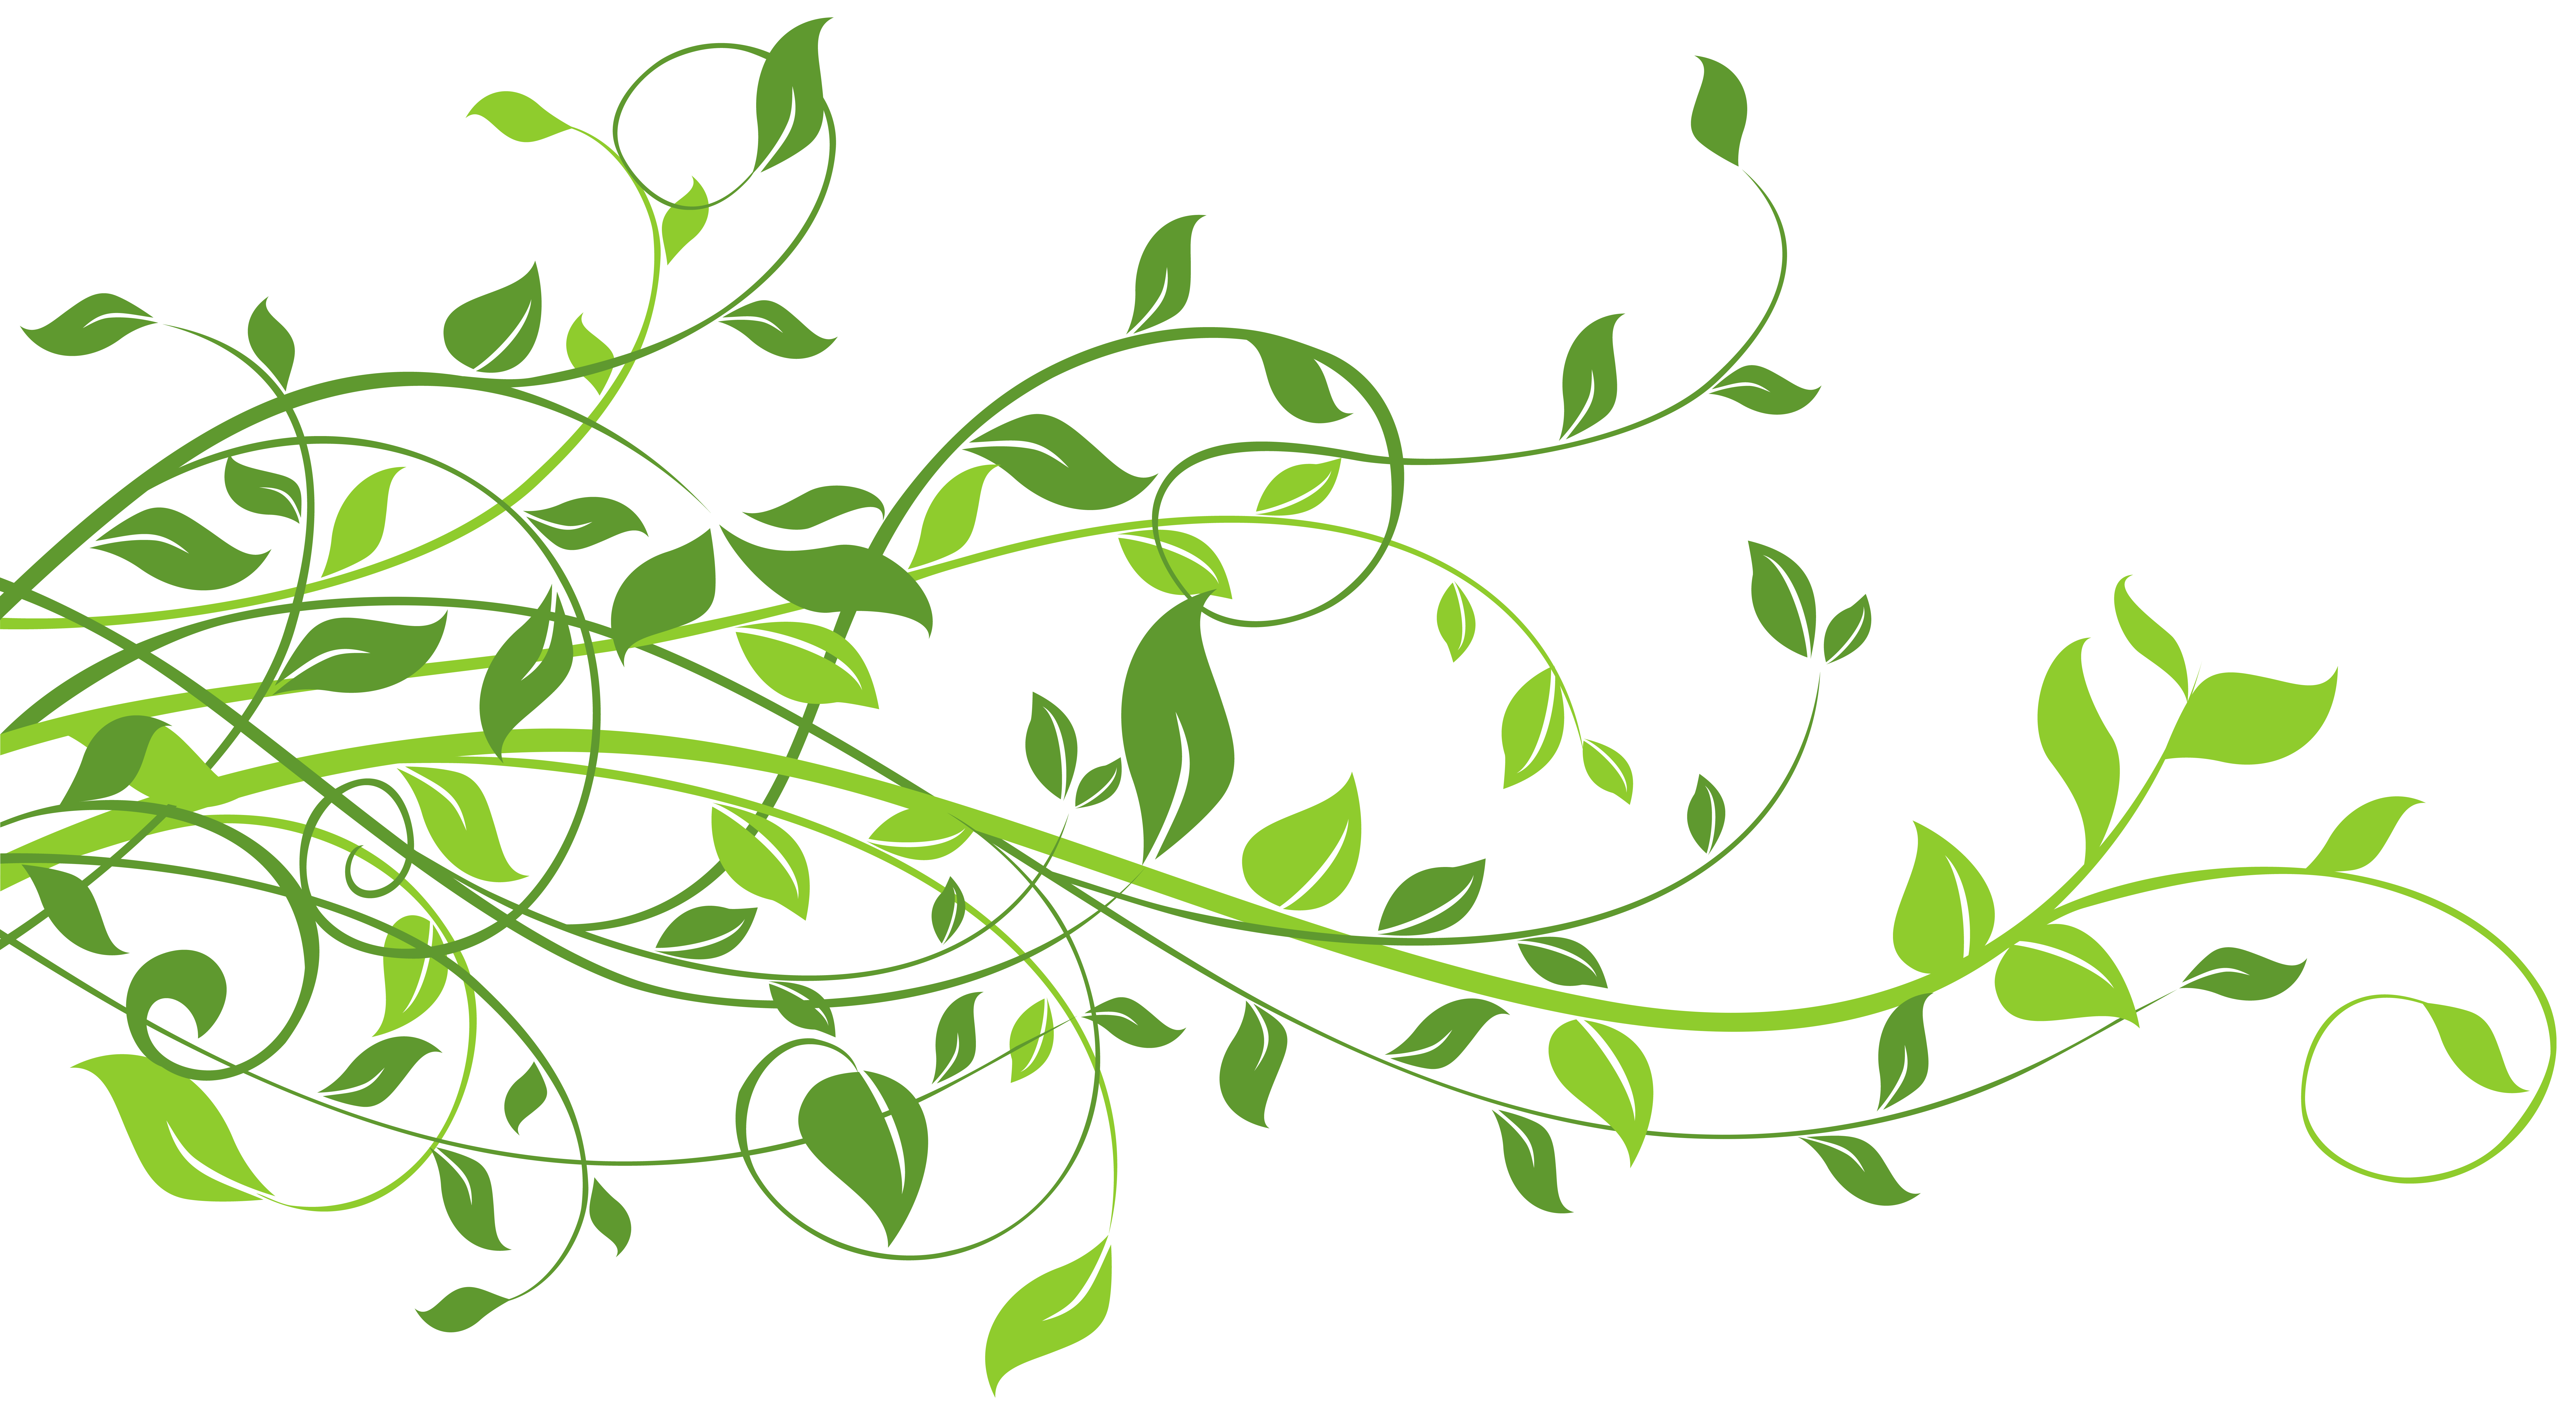 Transparent background images. Растительный узор. Орнамент из растений. Красивые зеленые веточки. Красивая веточка.